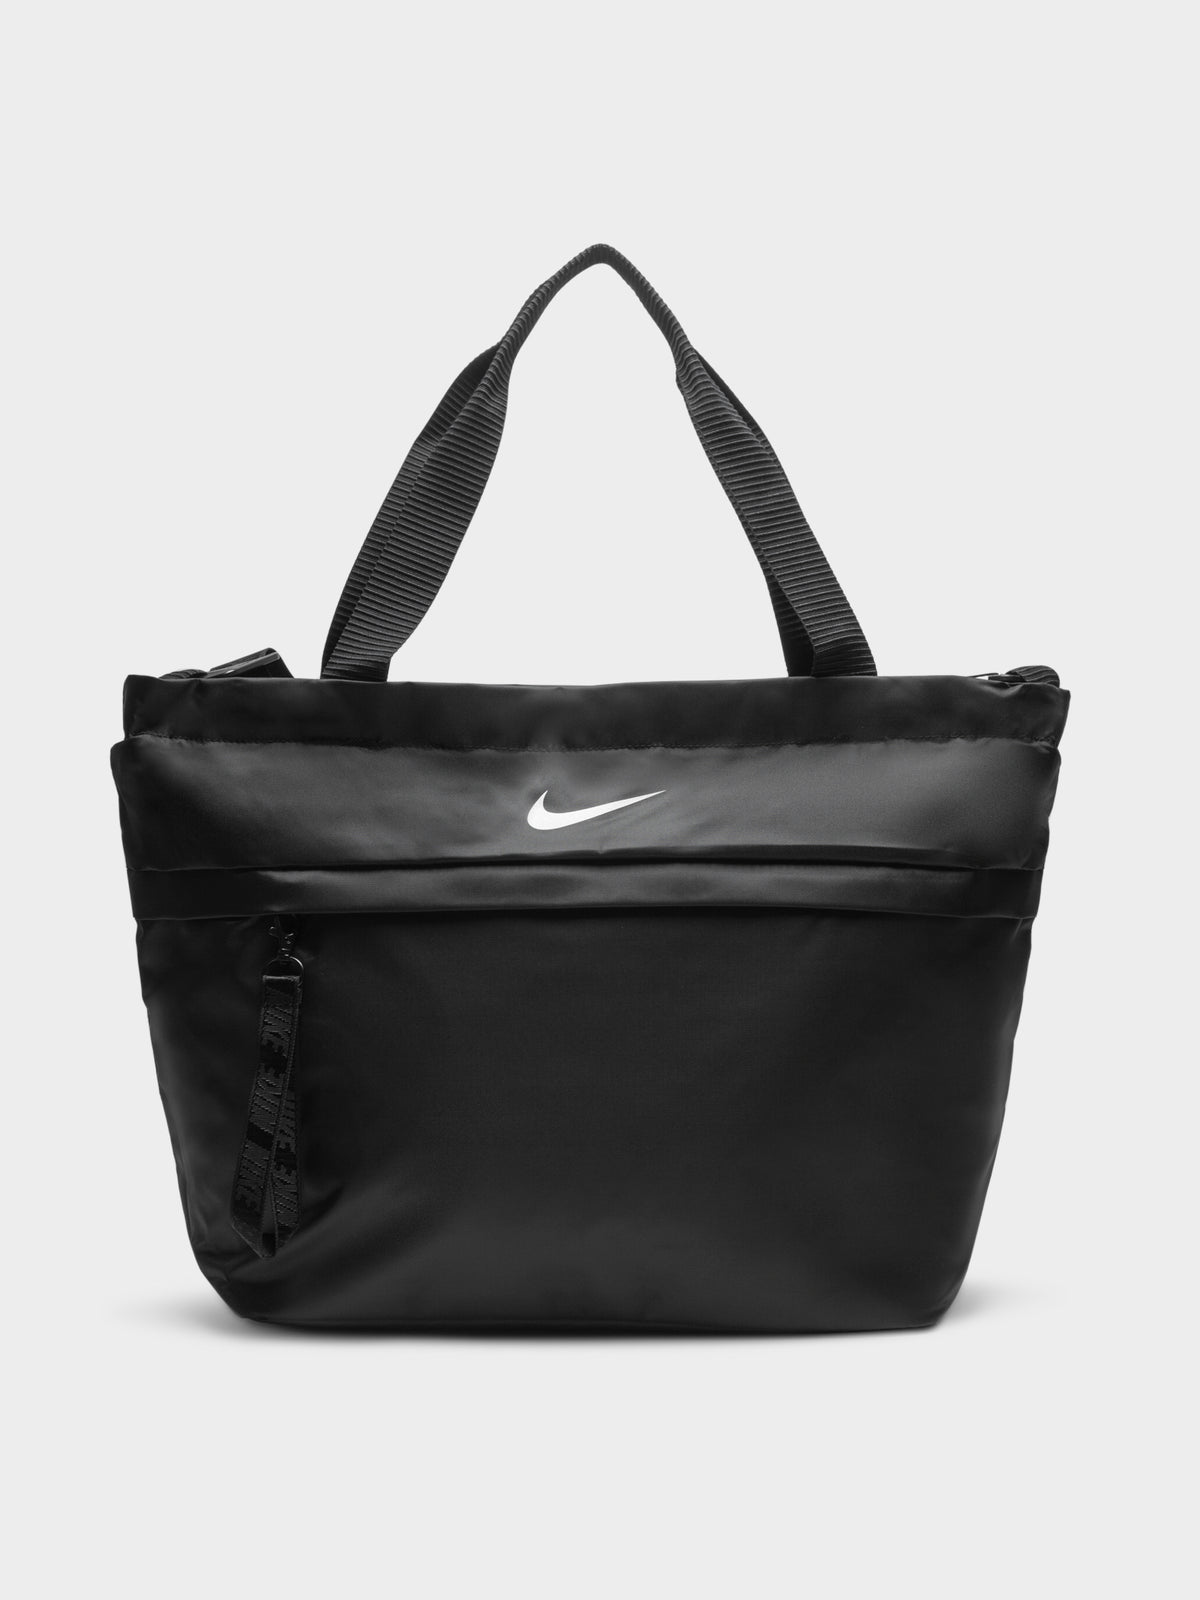 Nike Sportswear Tote in Black